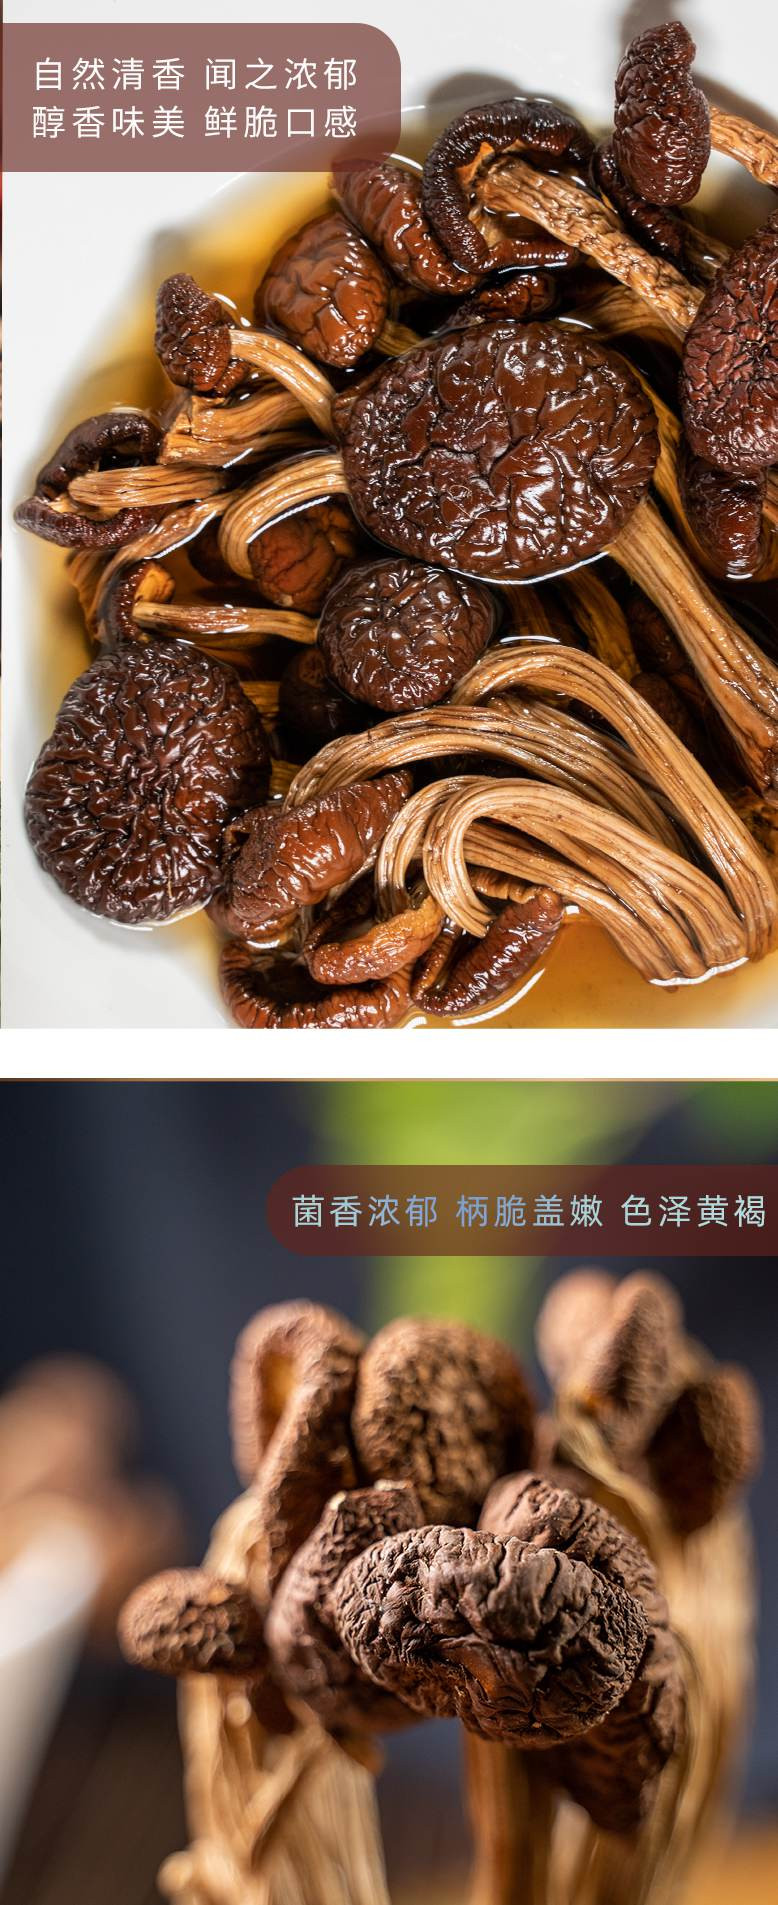 李食记 【福建莆田】 茶树菇252g 菇柄脆嫩 味道鲜美 气味清香